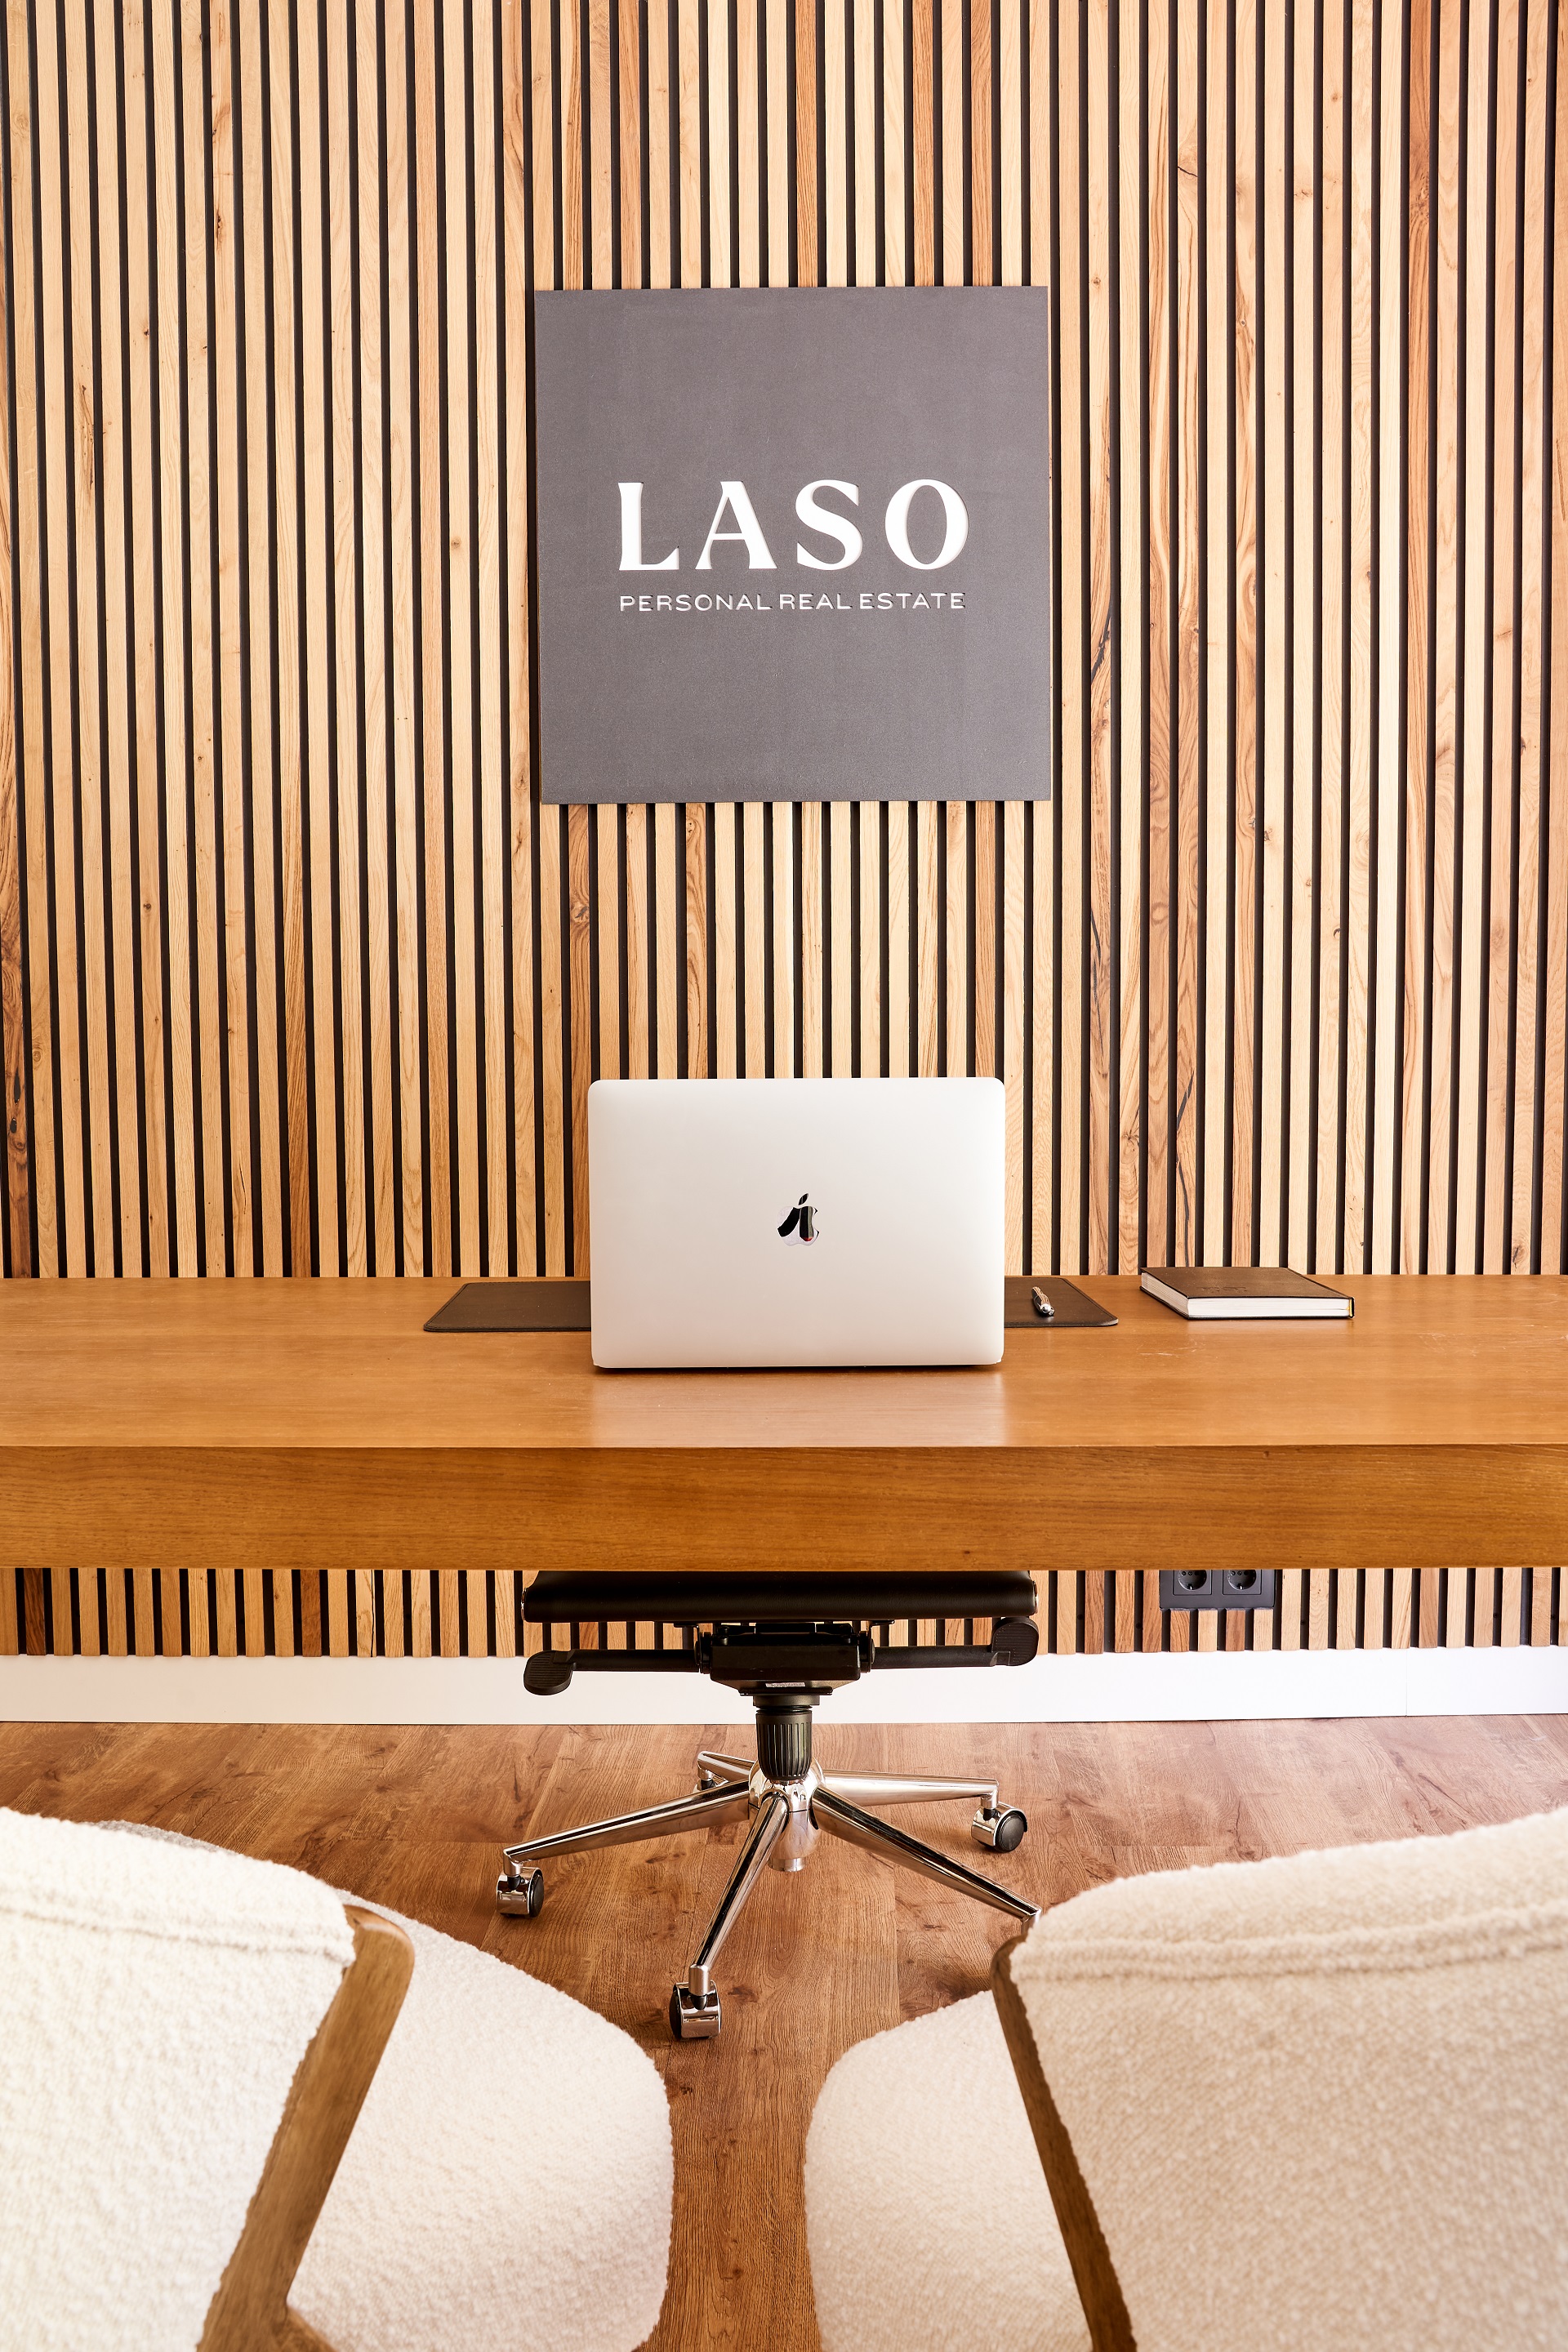 LASO, Personal Real Estate